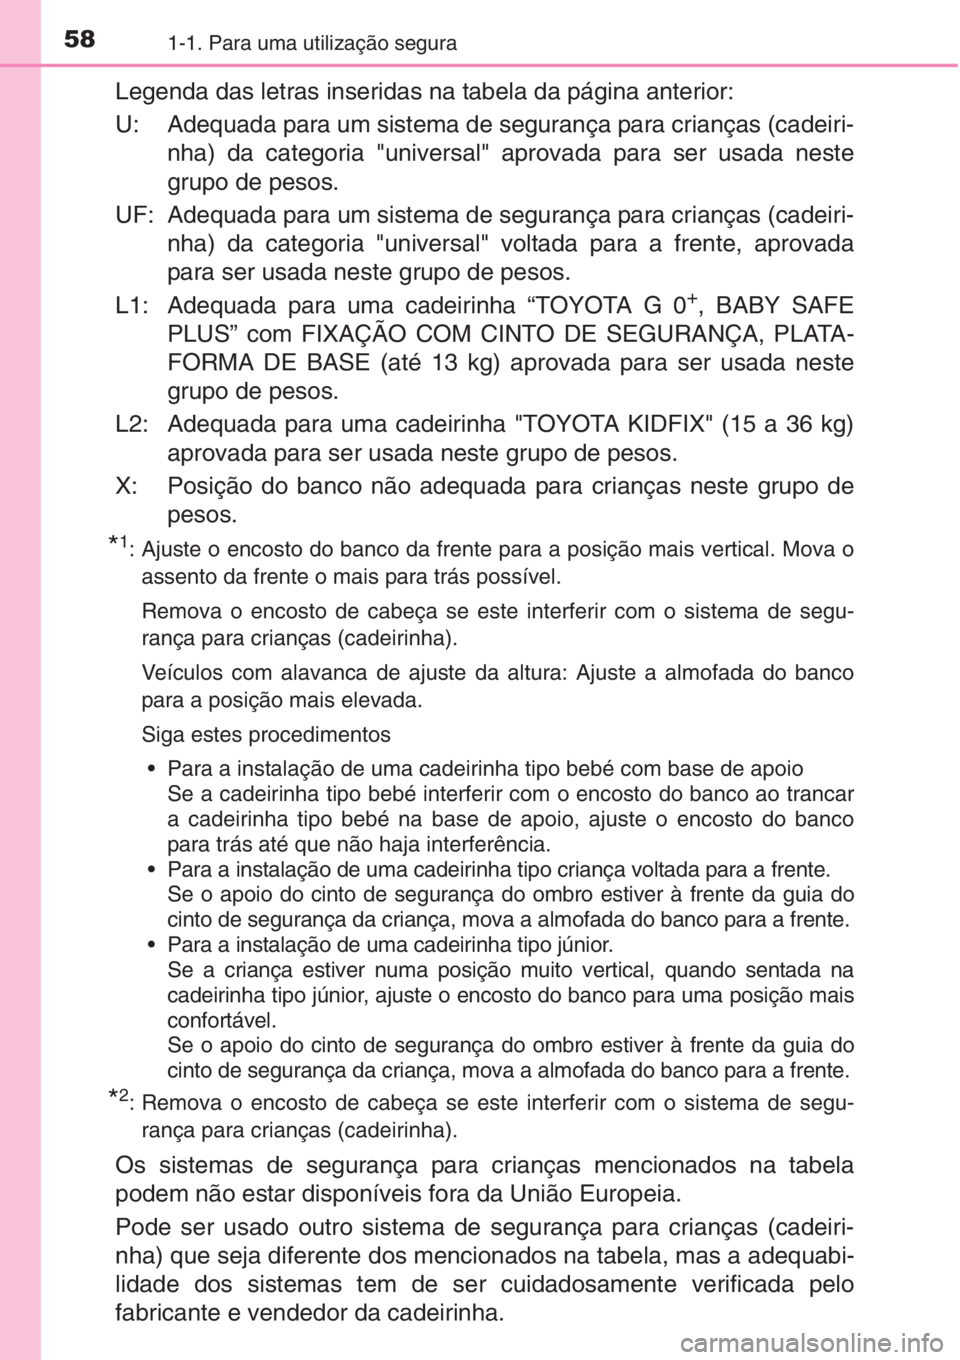 TOYOTA AURIS 2016  Manual de utilização (in Portuguese) 581-1. Para uma utilização segura
Legenda das letras inseridas na tabela da página anterior:
U: Adequada para um sistema de segurança para crianças (cadeiri-
nha) da categoria "universal"